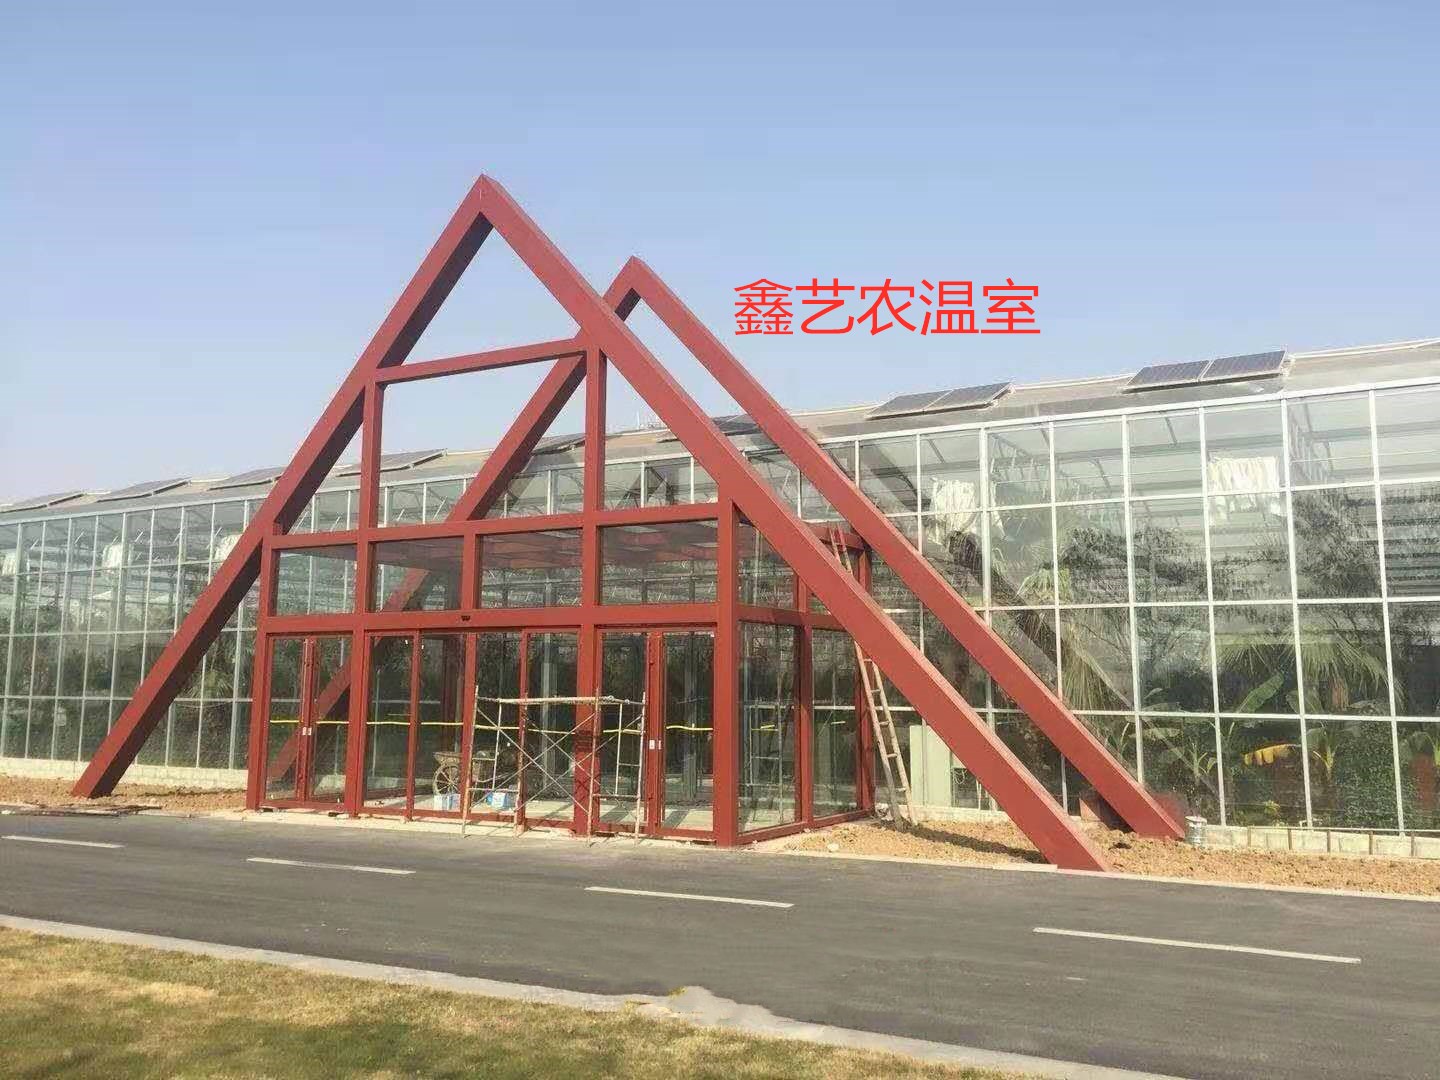 青州市鑫藝農溫室工程有限公司